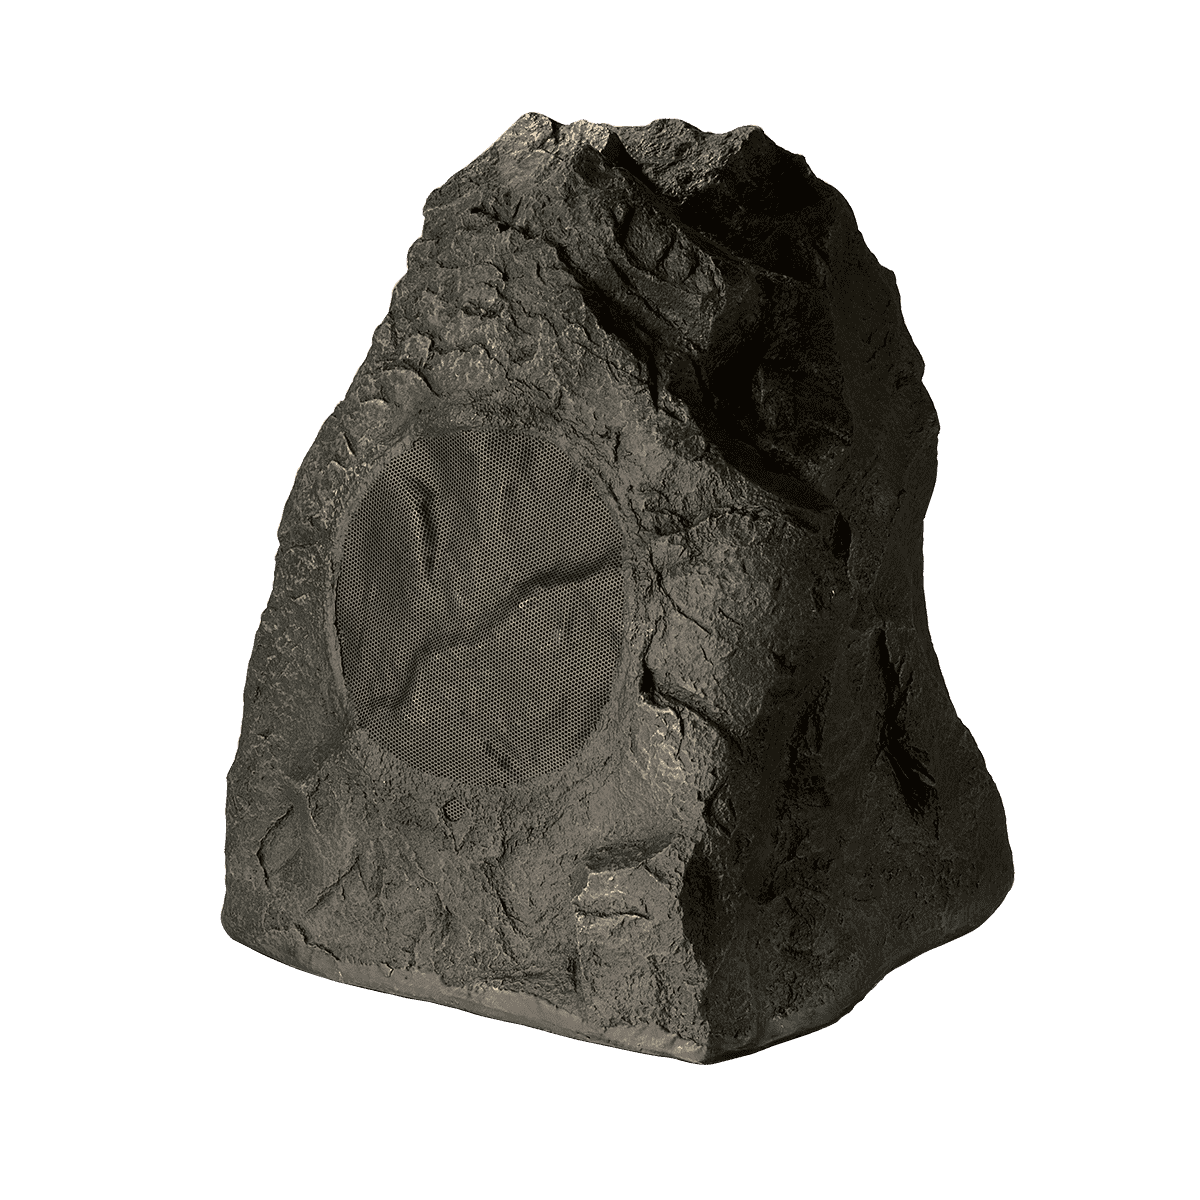 Paradigm Rock Monitor 80-SM, lauke pastatoma garso kolonėlė-akmuo (įvairių spalvų)-Northeastern Dark Granite